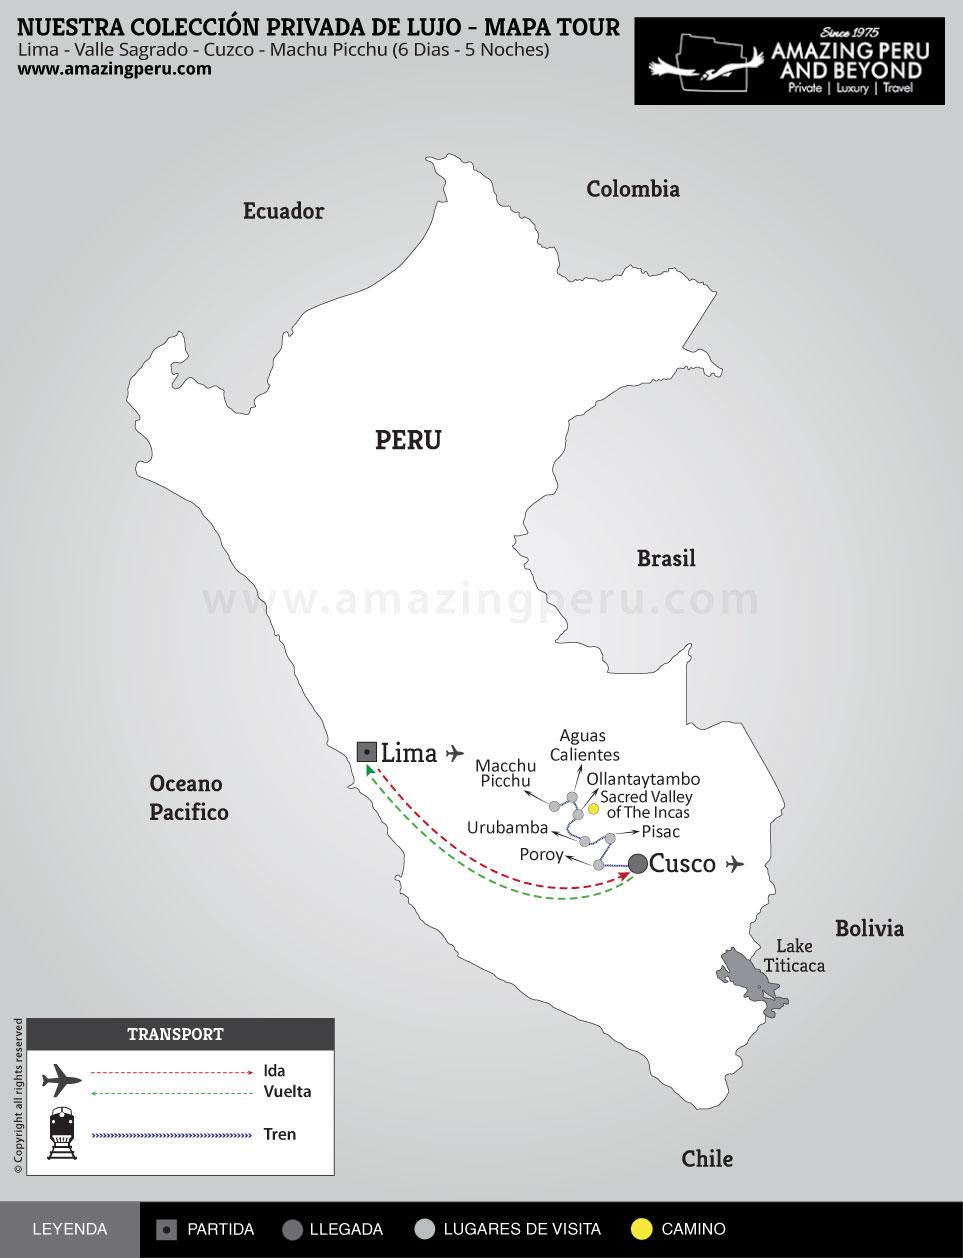 Nuestra Colección Privada de Lujo - Tour Exclusivamente proveido por Amazing Peru - Estilo: Ultra Lujo VIP Escapate a Machu Picchu